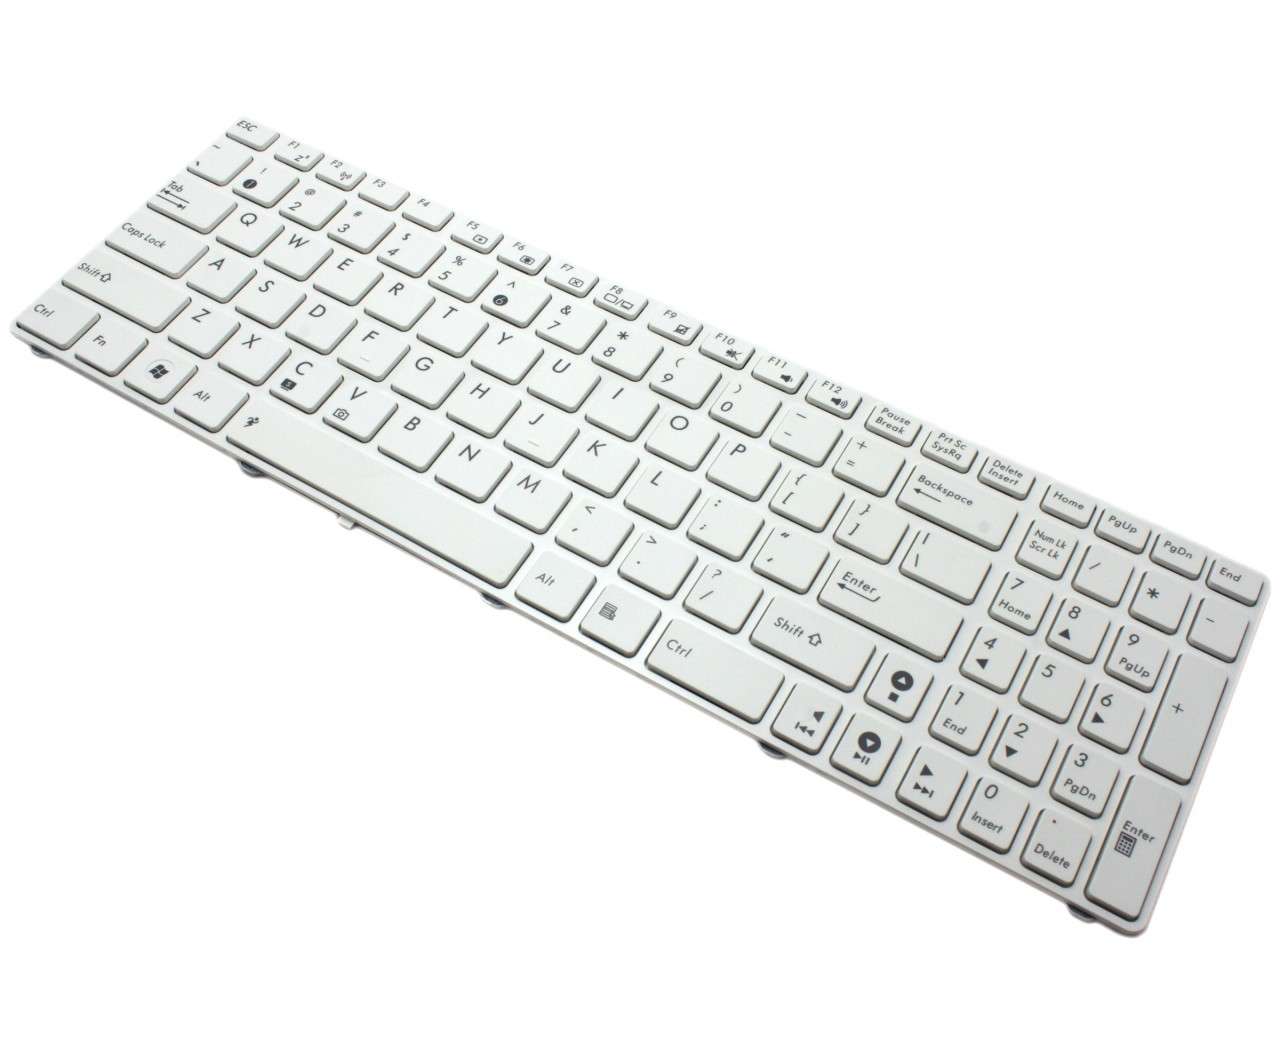 Tastatura Asus K72dr alba